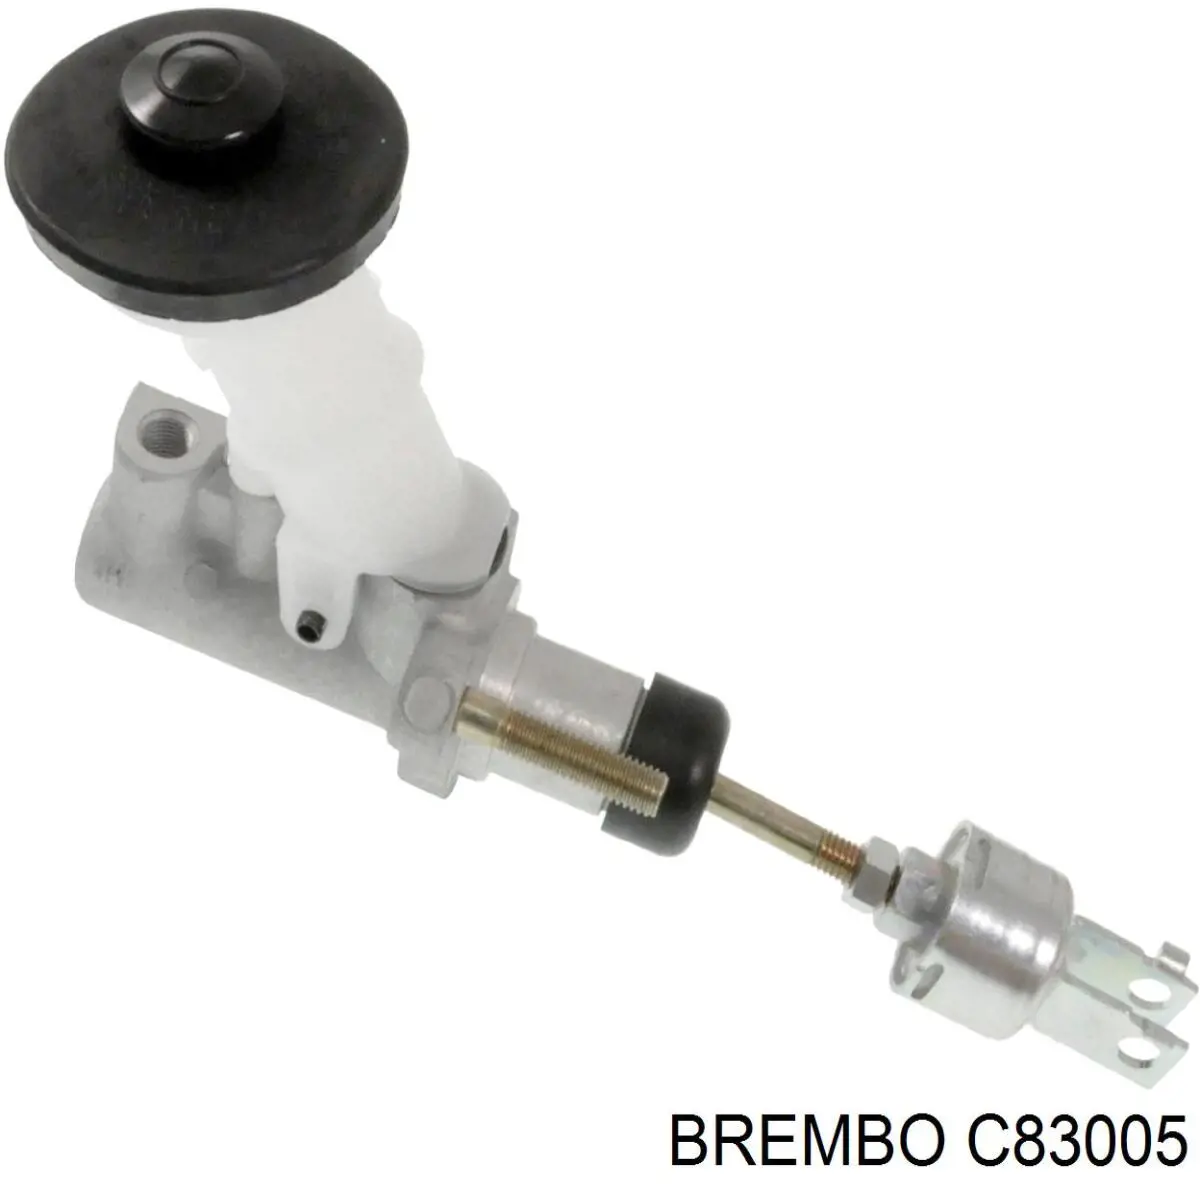 C83005 Brembo cilindro maestro de embrague